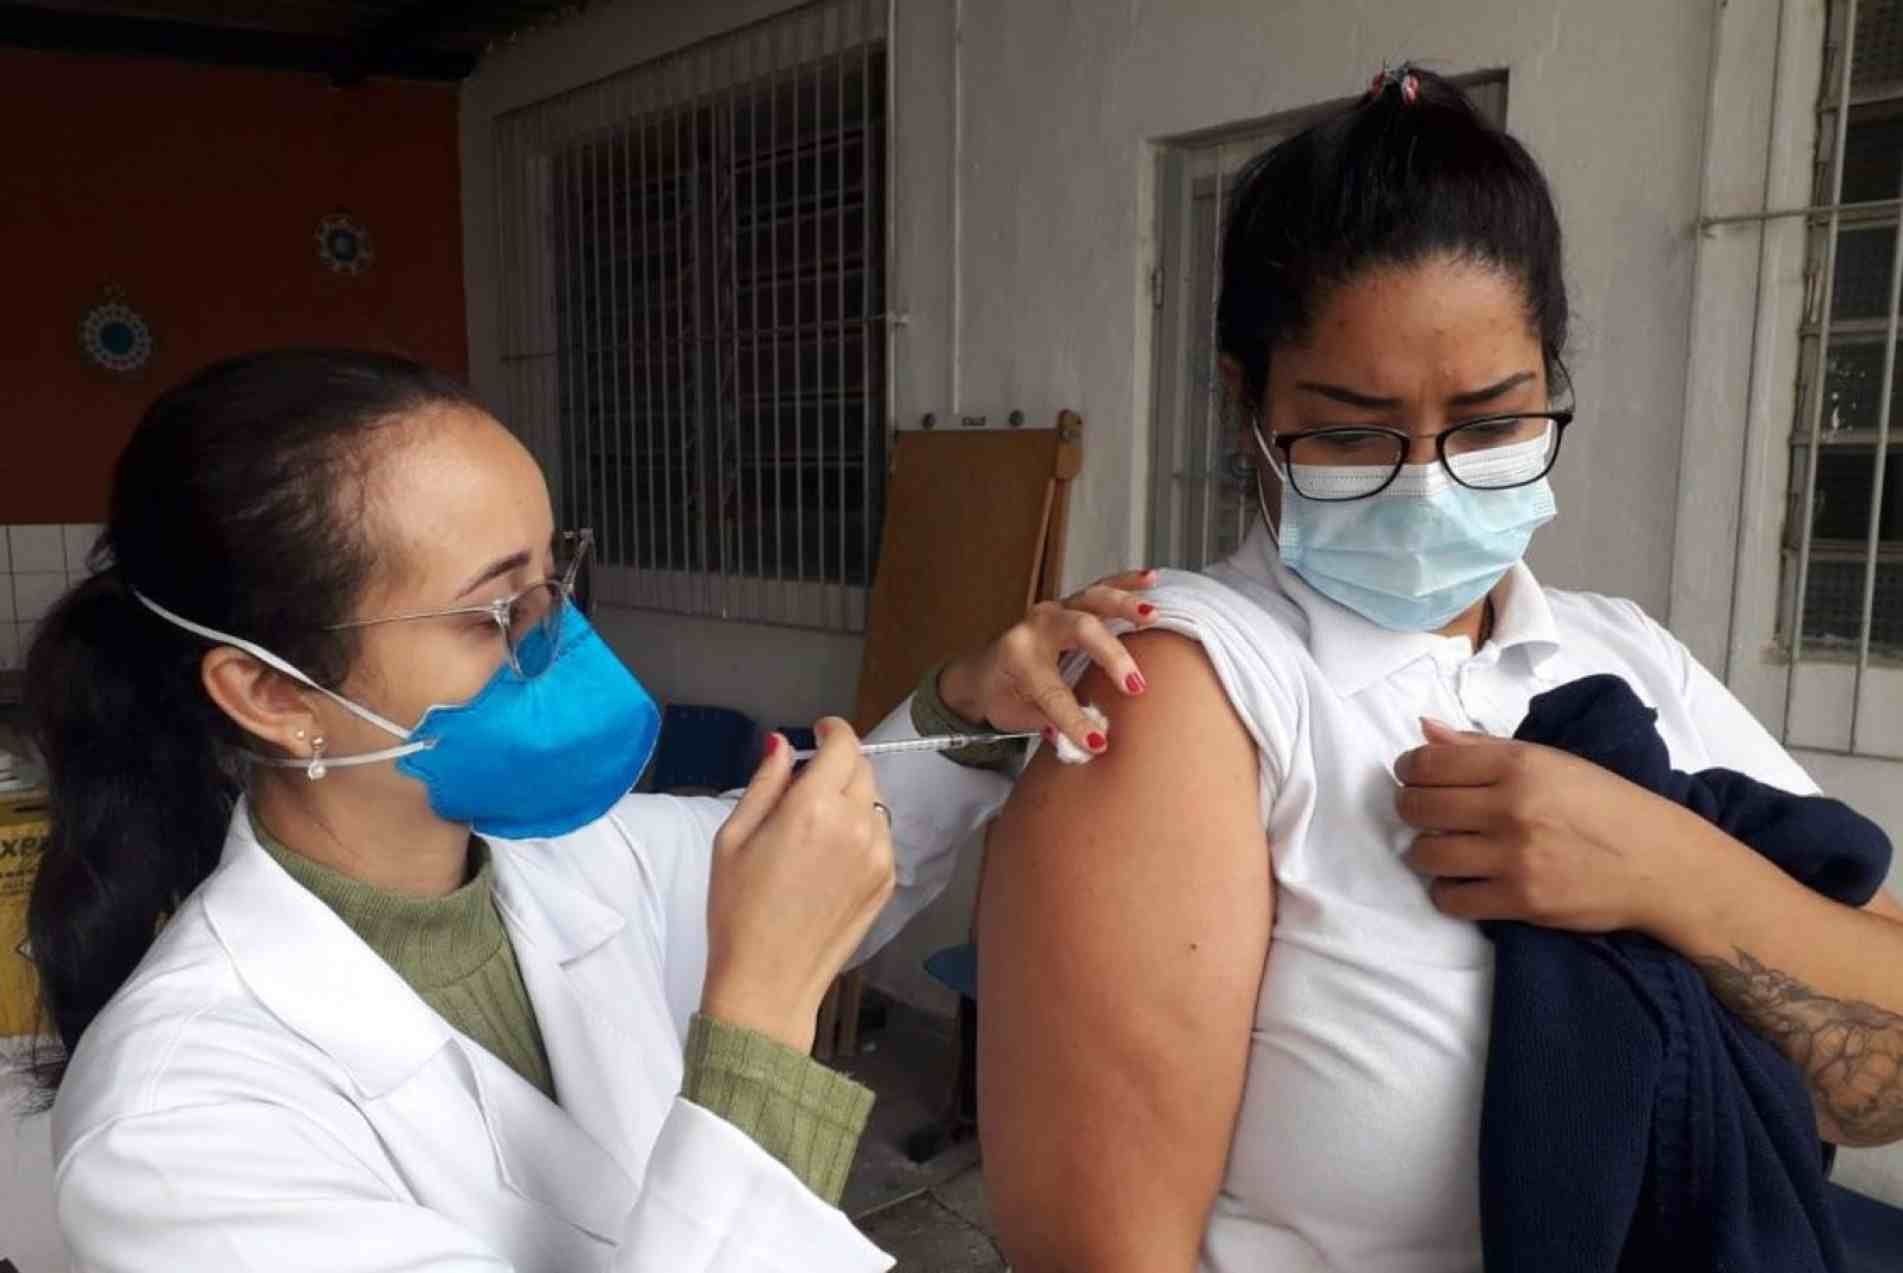 Em Sorocaba, segundo dados oficiais, 1.035.829 doses de vacinas contra a Covid-19 já foram aplicadas.